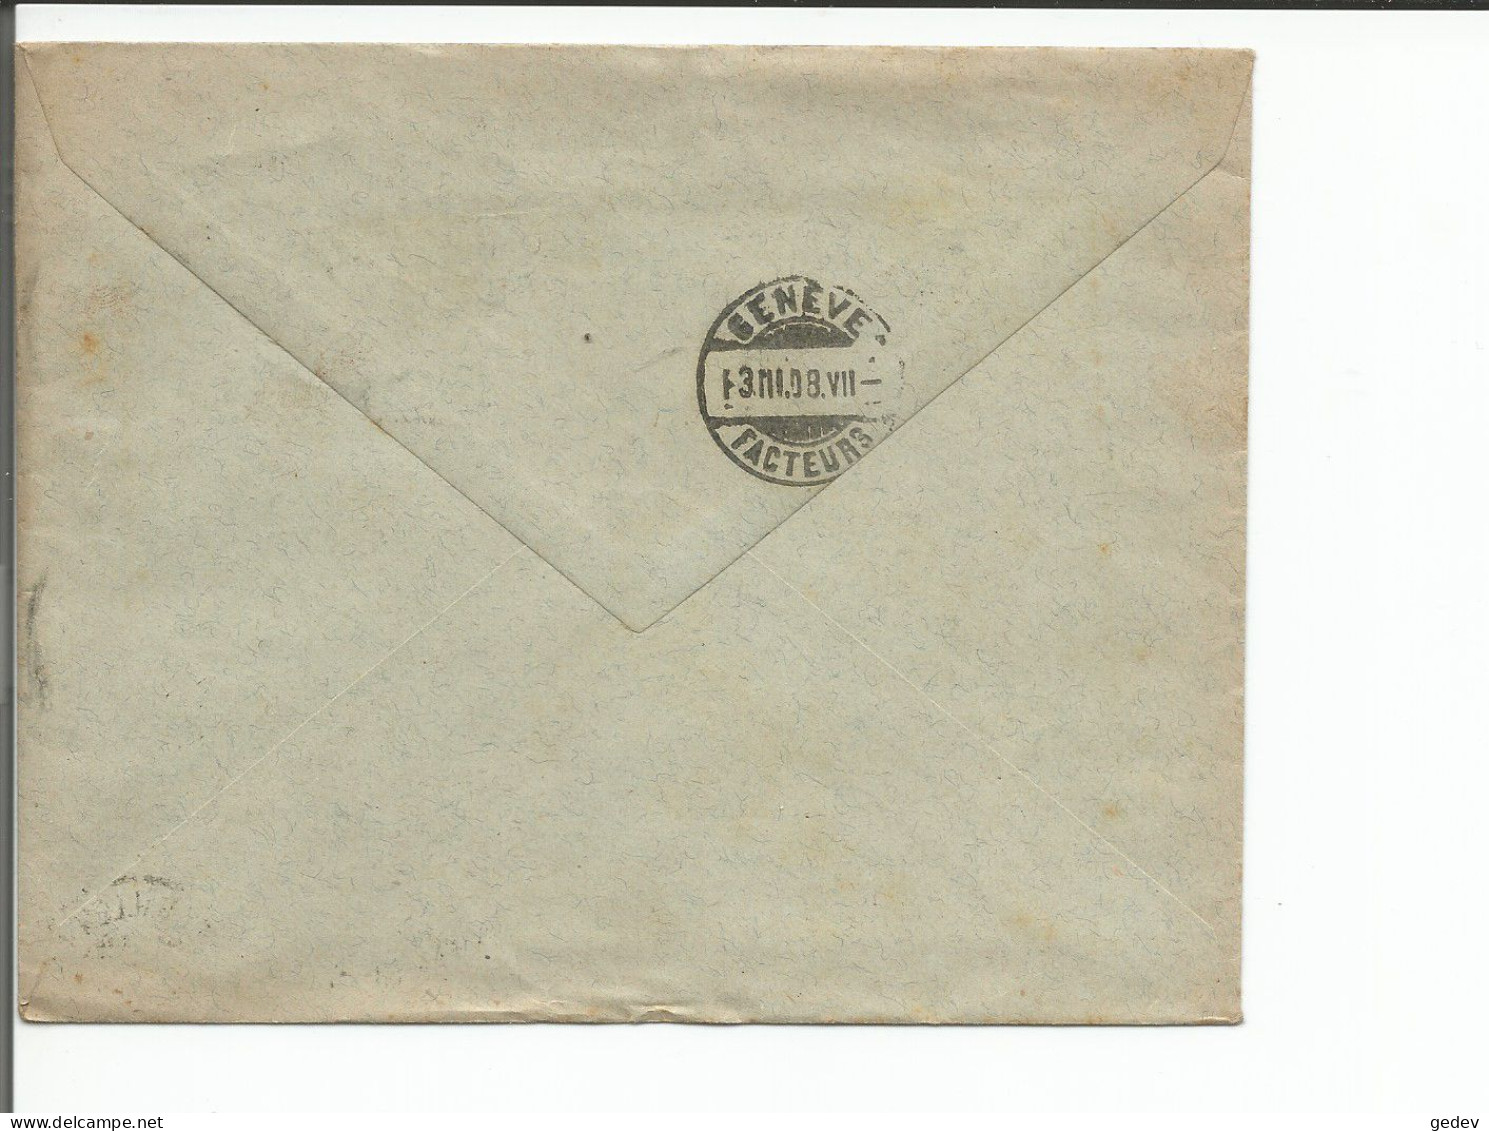 Lettre Suisse, Charcuterie E. Rietmann St Gallen - Genève (2.3.1908) - Lettres & Documents